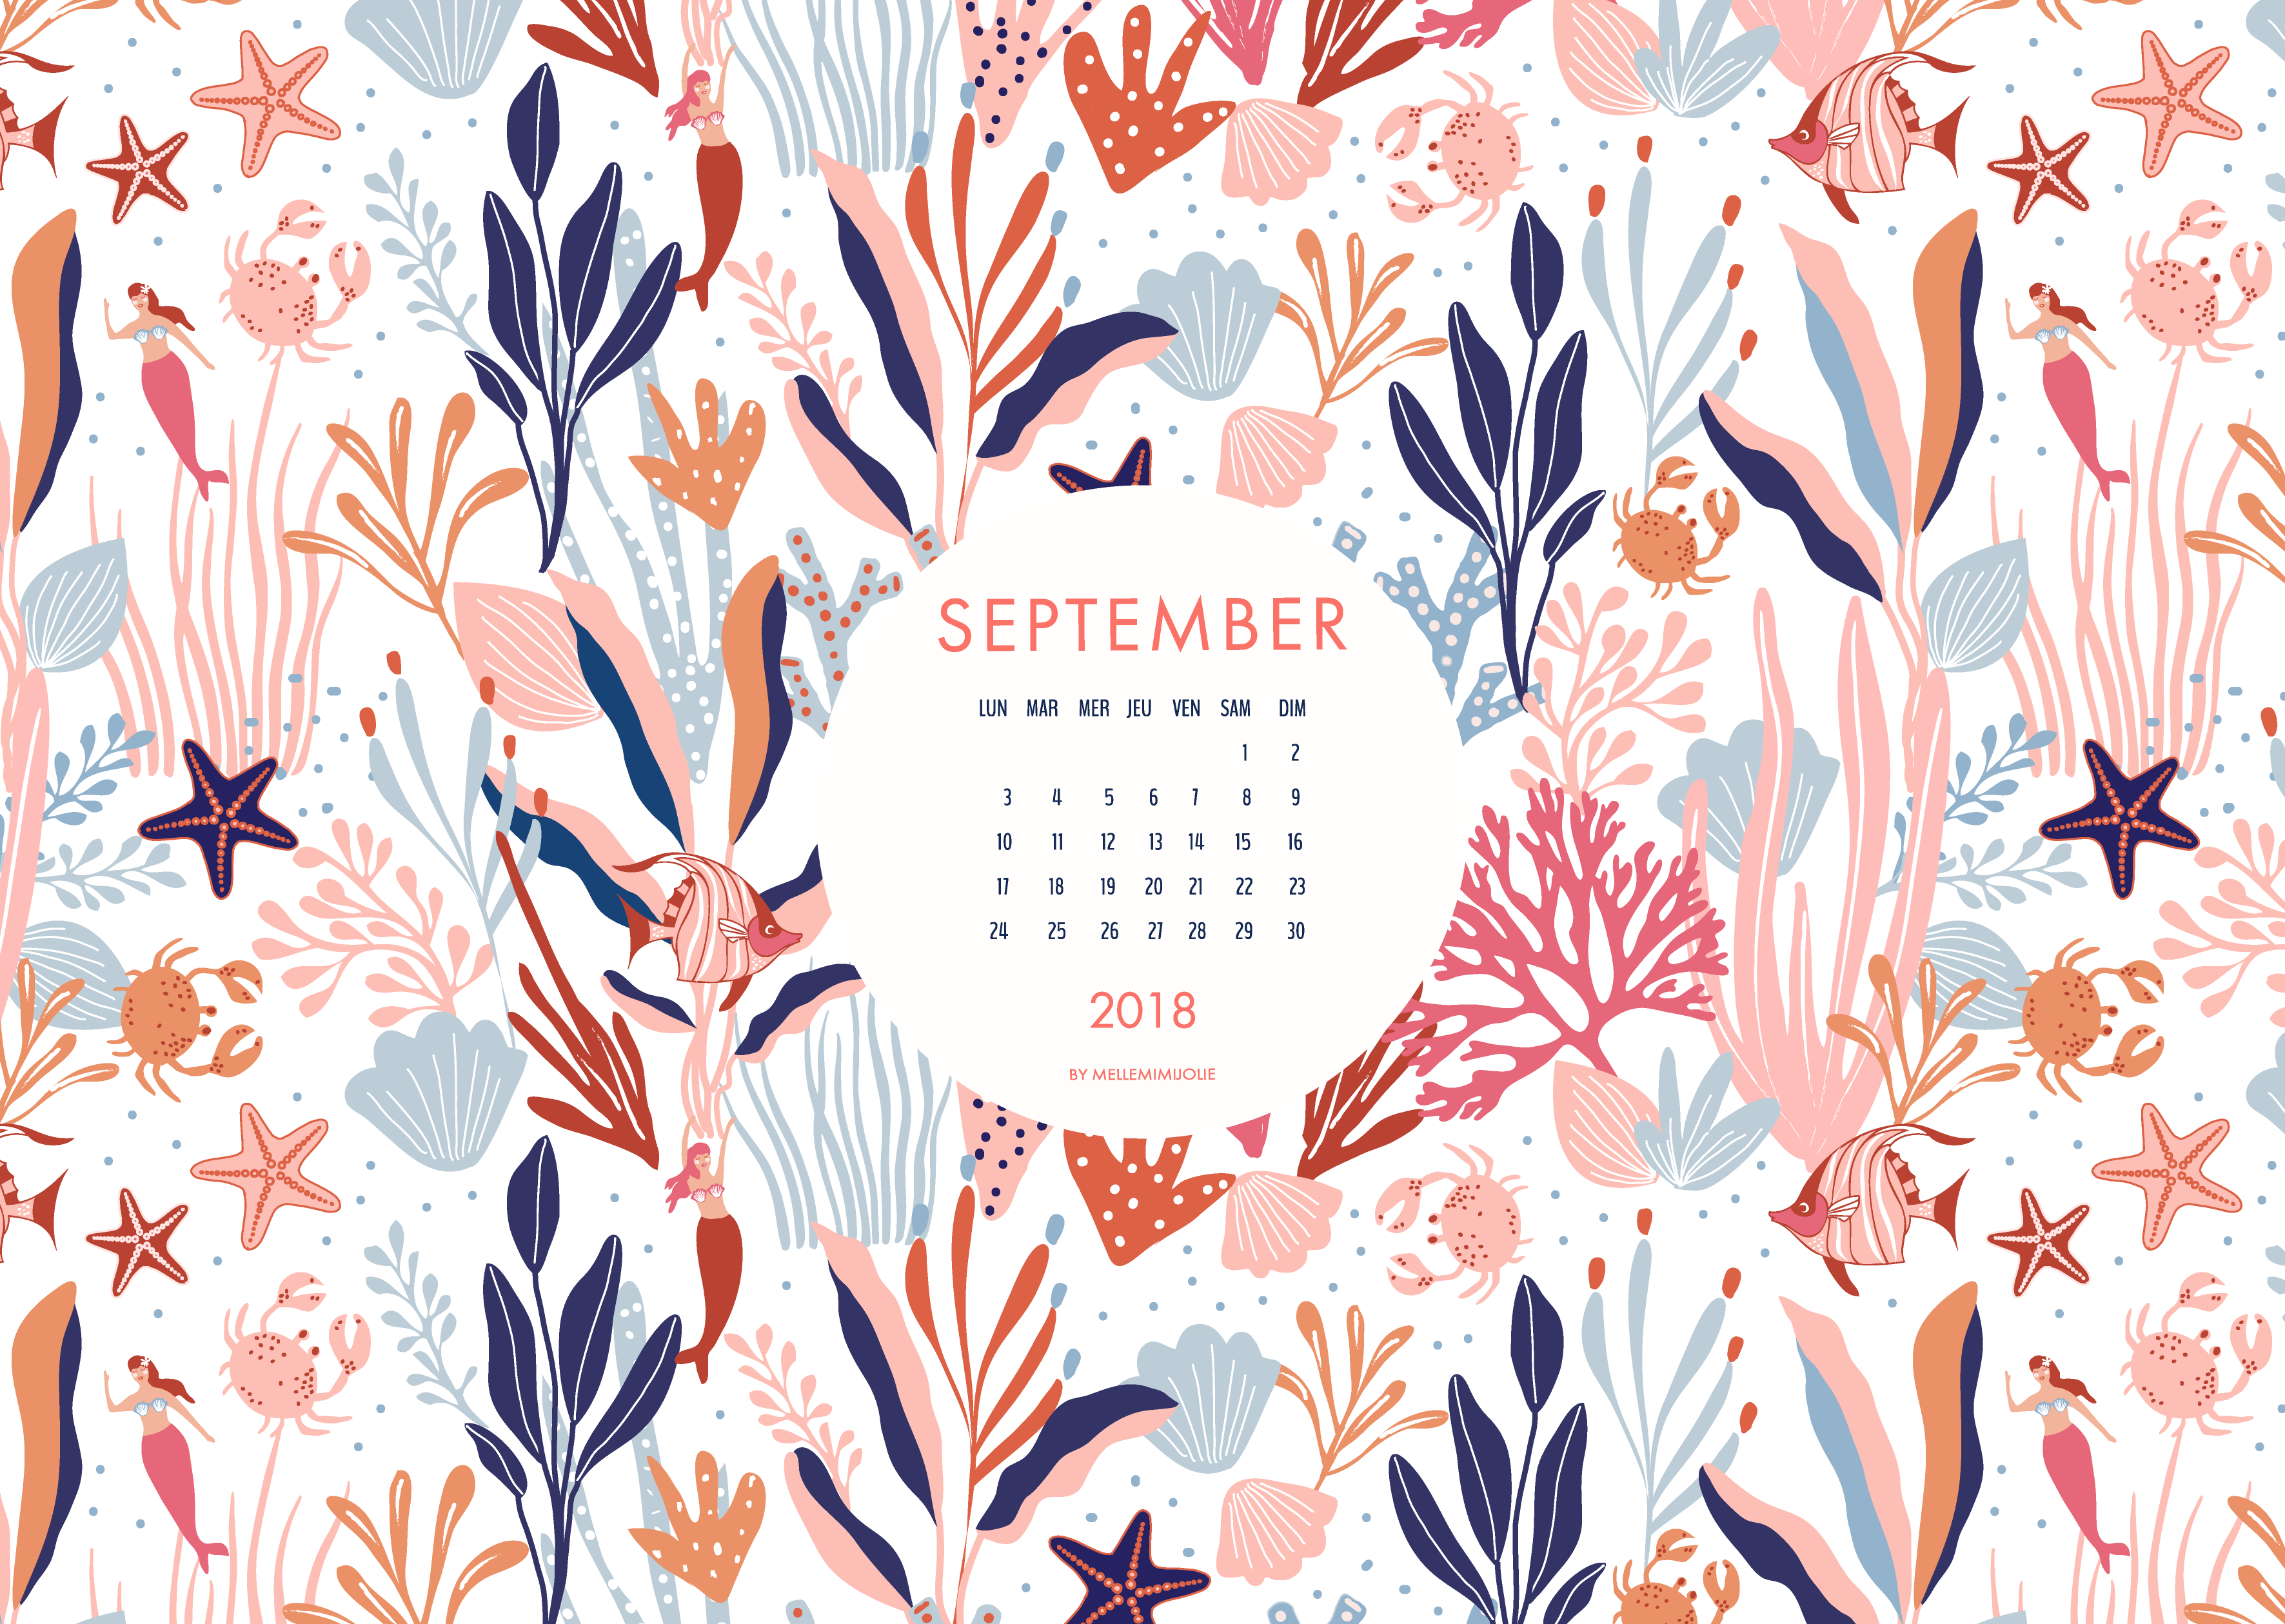 septembre-mellemimijolie-wallpaper-aquatique